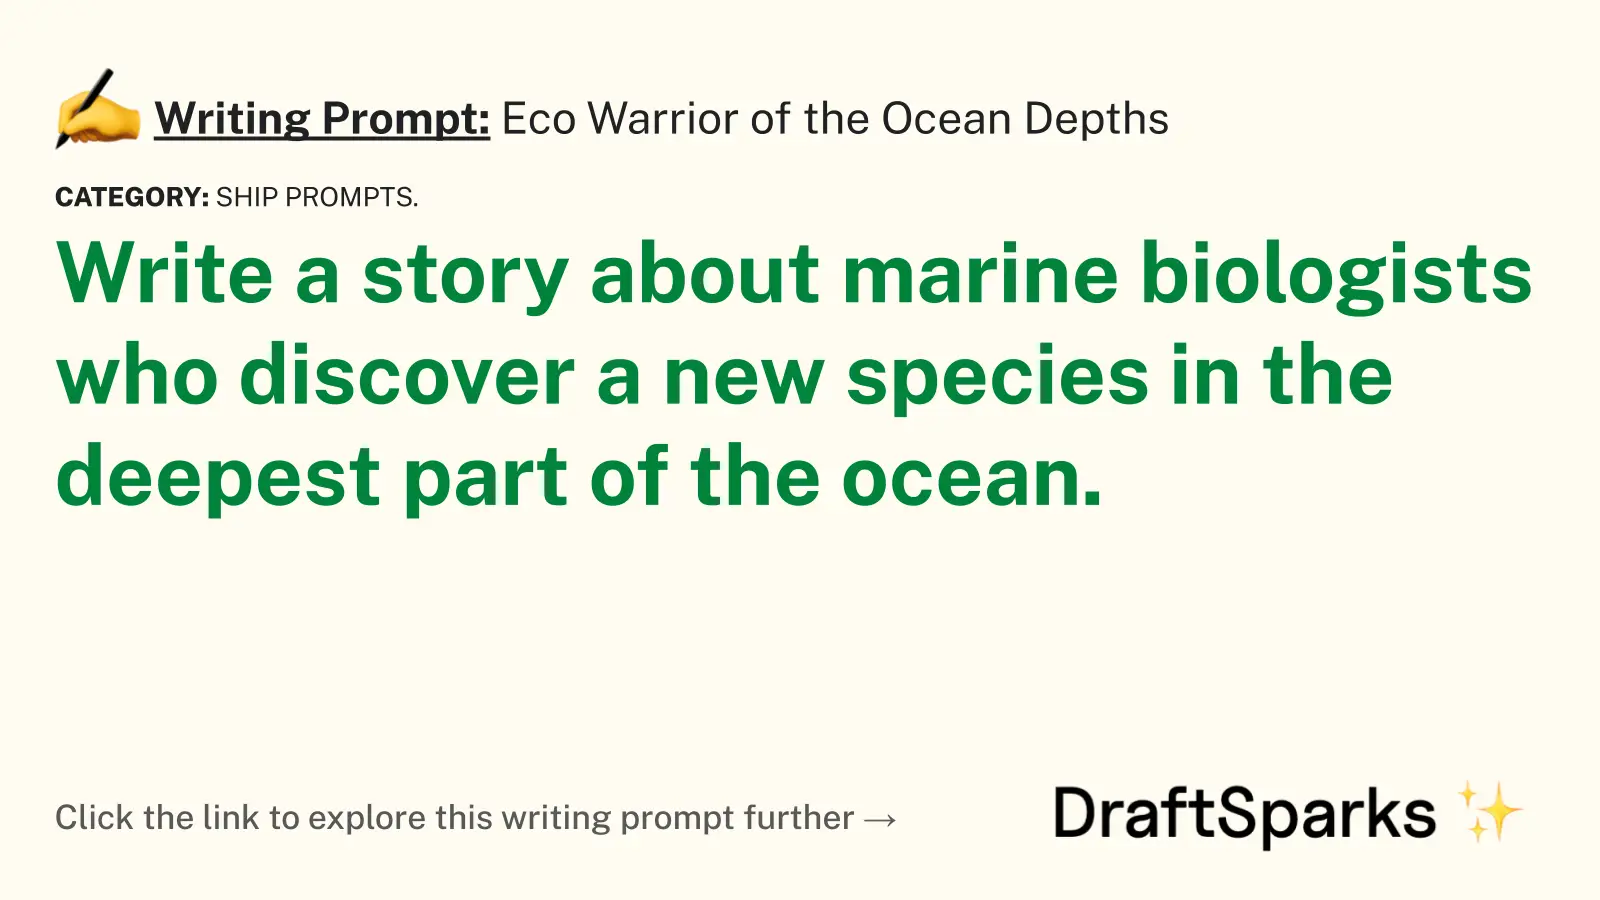 Eco Warrior of the Ocean Depths